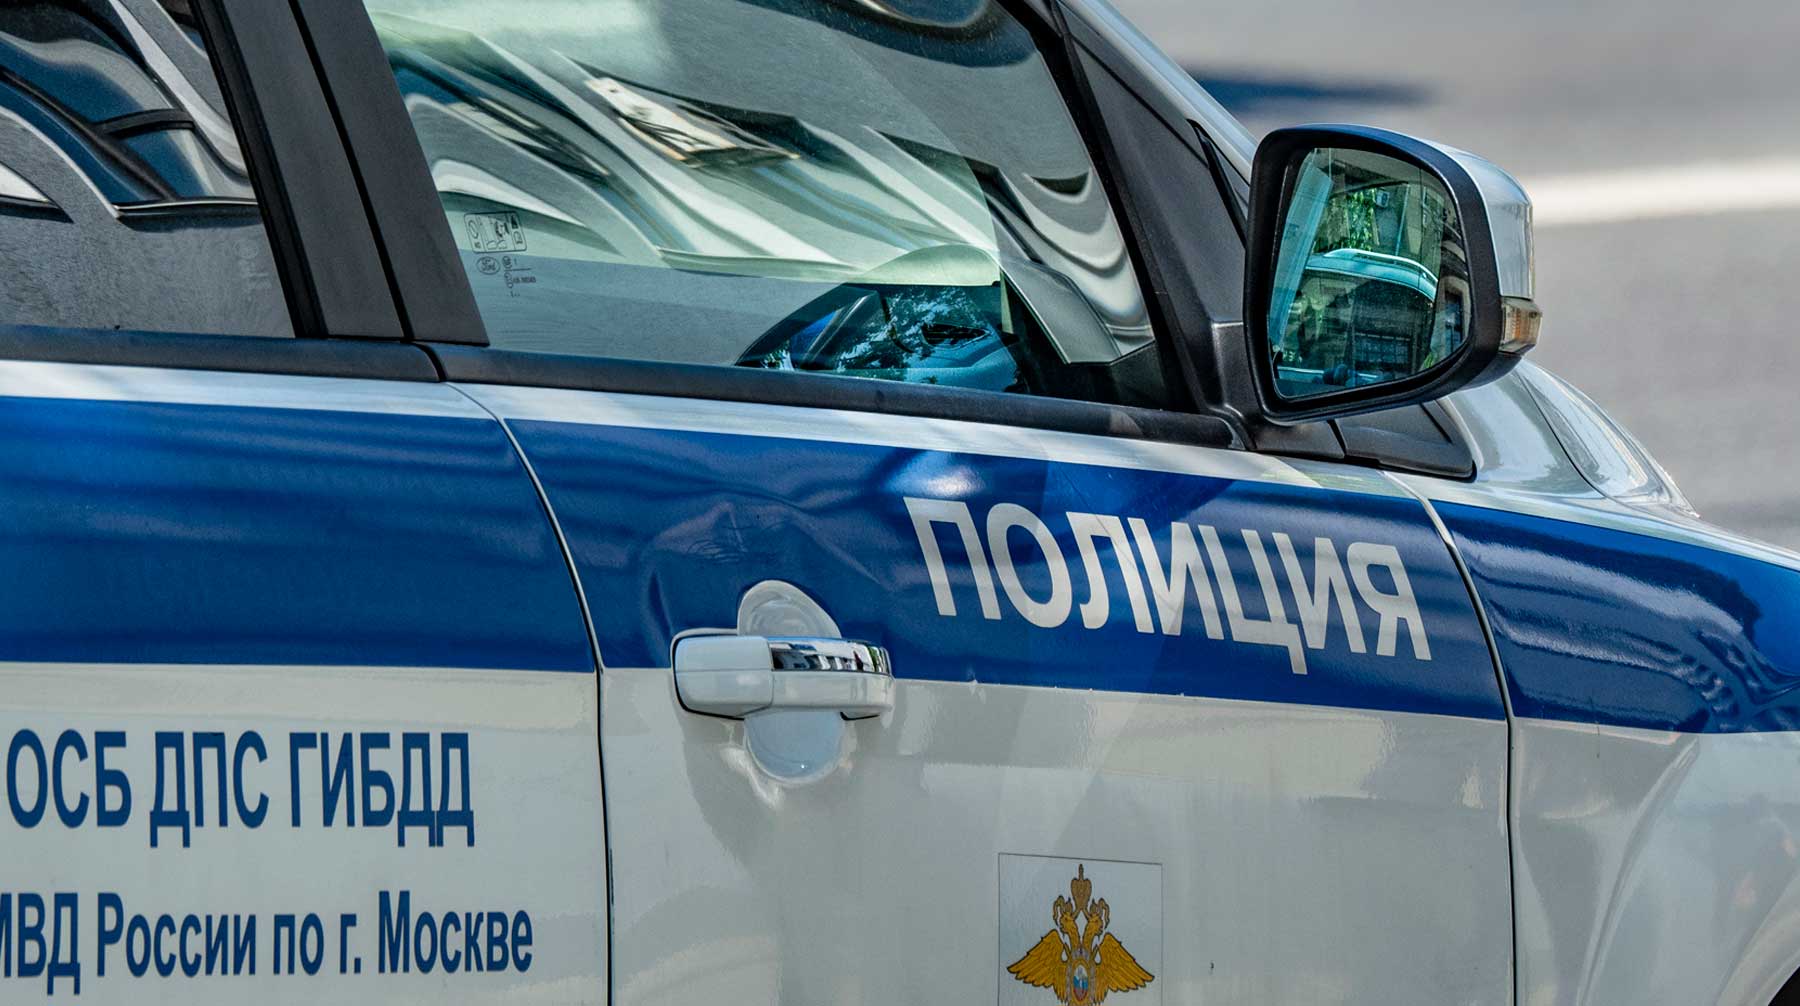 Мужчина вначале бросил камень в служебный автомобиль, а уже при задержании порезал правоохранителям форму Фото: © Global Look Press / Konstantin Kokoshkin